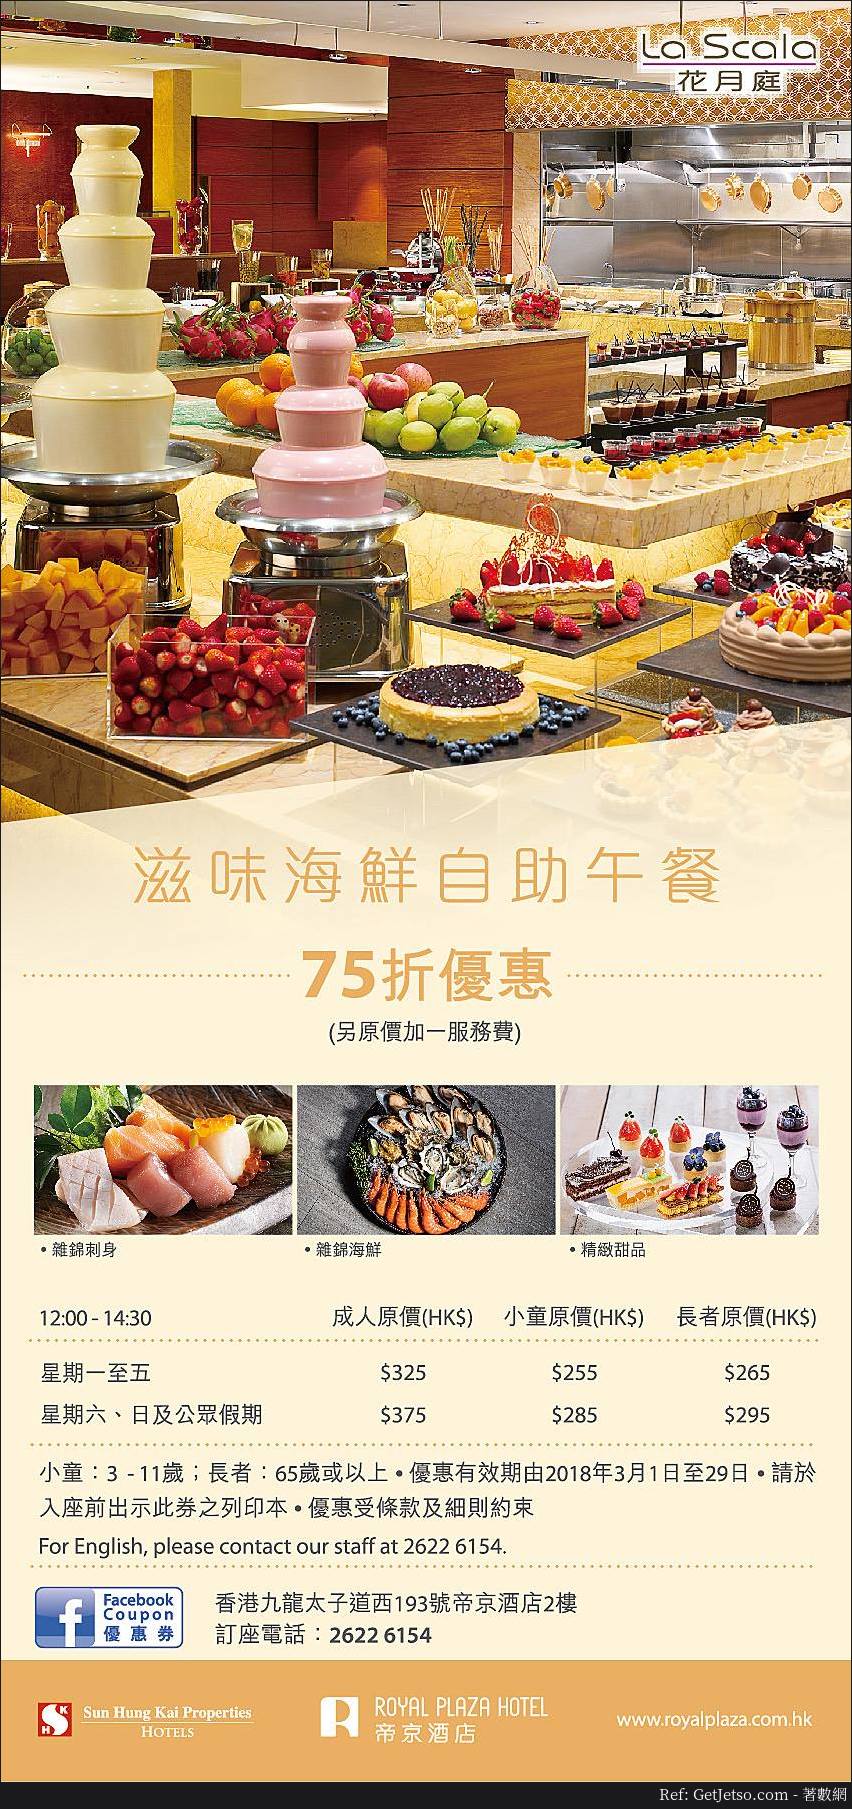 帝京酒店低至75折自助餐優惠(至18年3月31日)圖片3